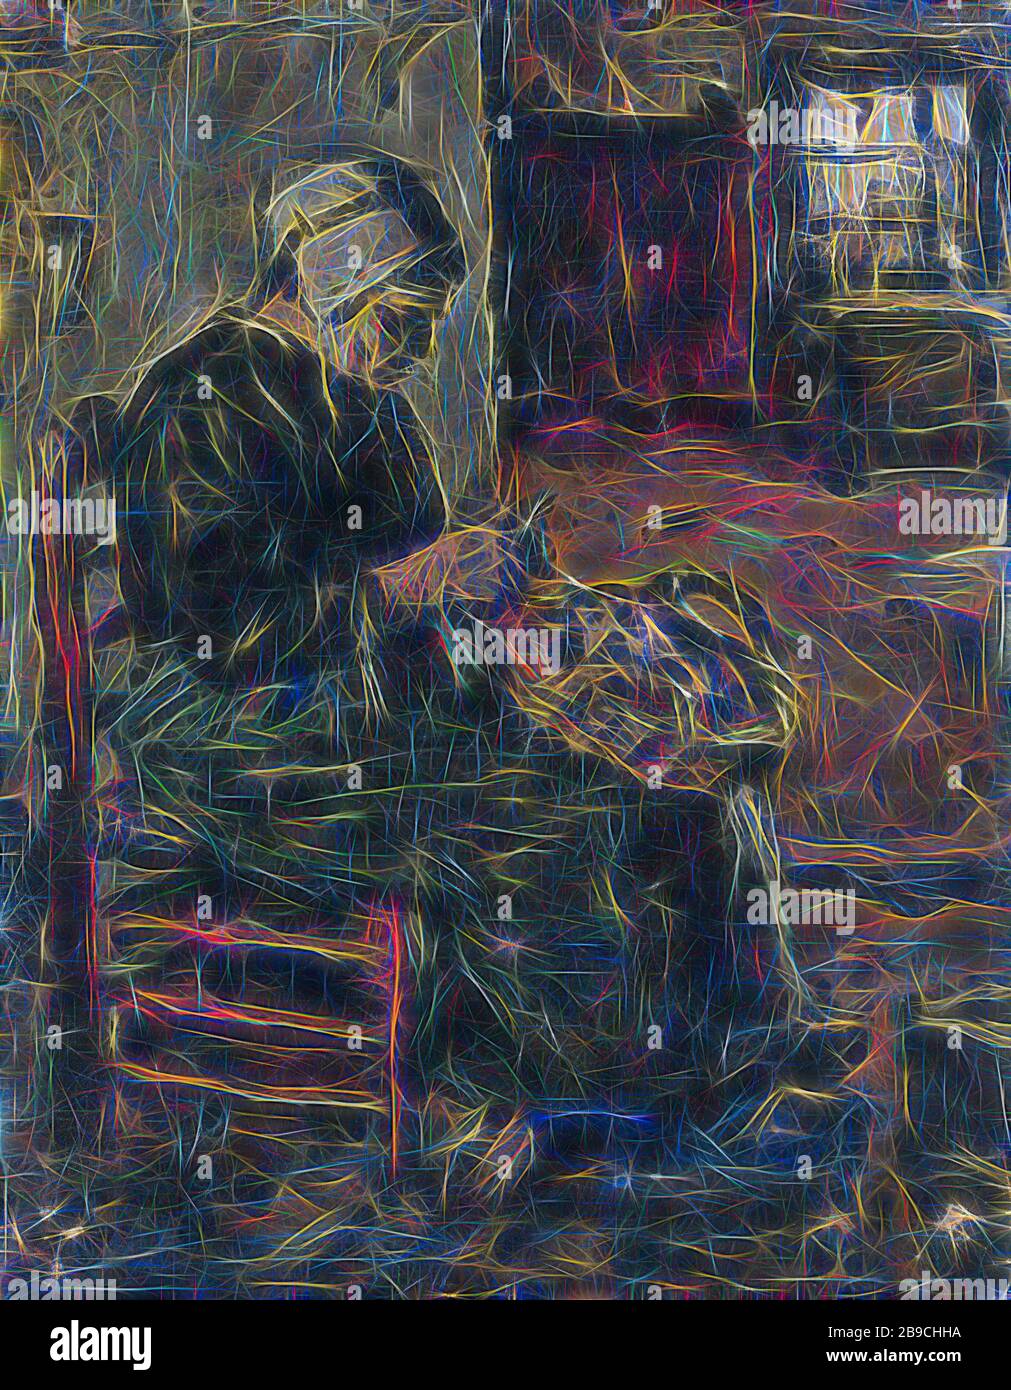 Contadino Donna Peeling patate, interno con moglie di un contadino che si spellano le patate mentre si siede su una sedia. A destra uno sguardo attraverso ad un'altra stanza, patate, verdure di pulizia, Suze Robertson, 1875 - 1922, pannello, vernice ad olio (vernice), h 26.2 cm × w 21 cm d 5.5 cm, Reimagined by Gibon, disegno di calore allegro di luminosità e raggi di luce radiance. Arte classica reinventata con un tocco moderno. La fotografia ispirata al futurismo, che abbraccia l'energia dinamica della tecnologia moderna, del movimento, della velocità e rivoluziona la cultura. Foto Stock